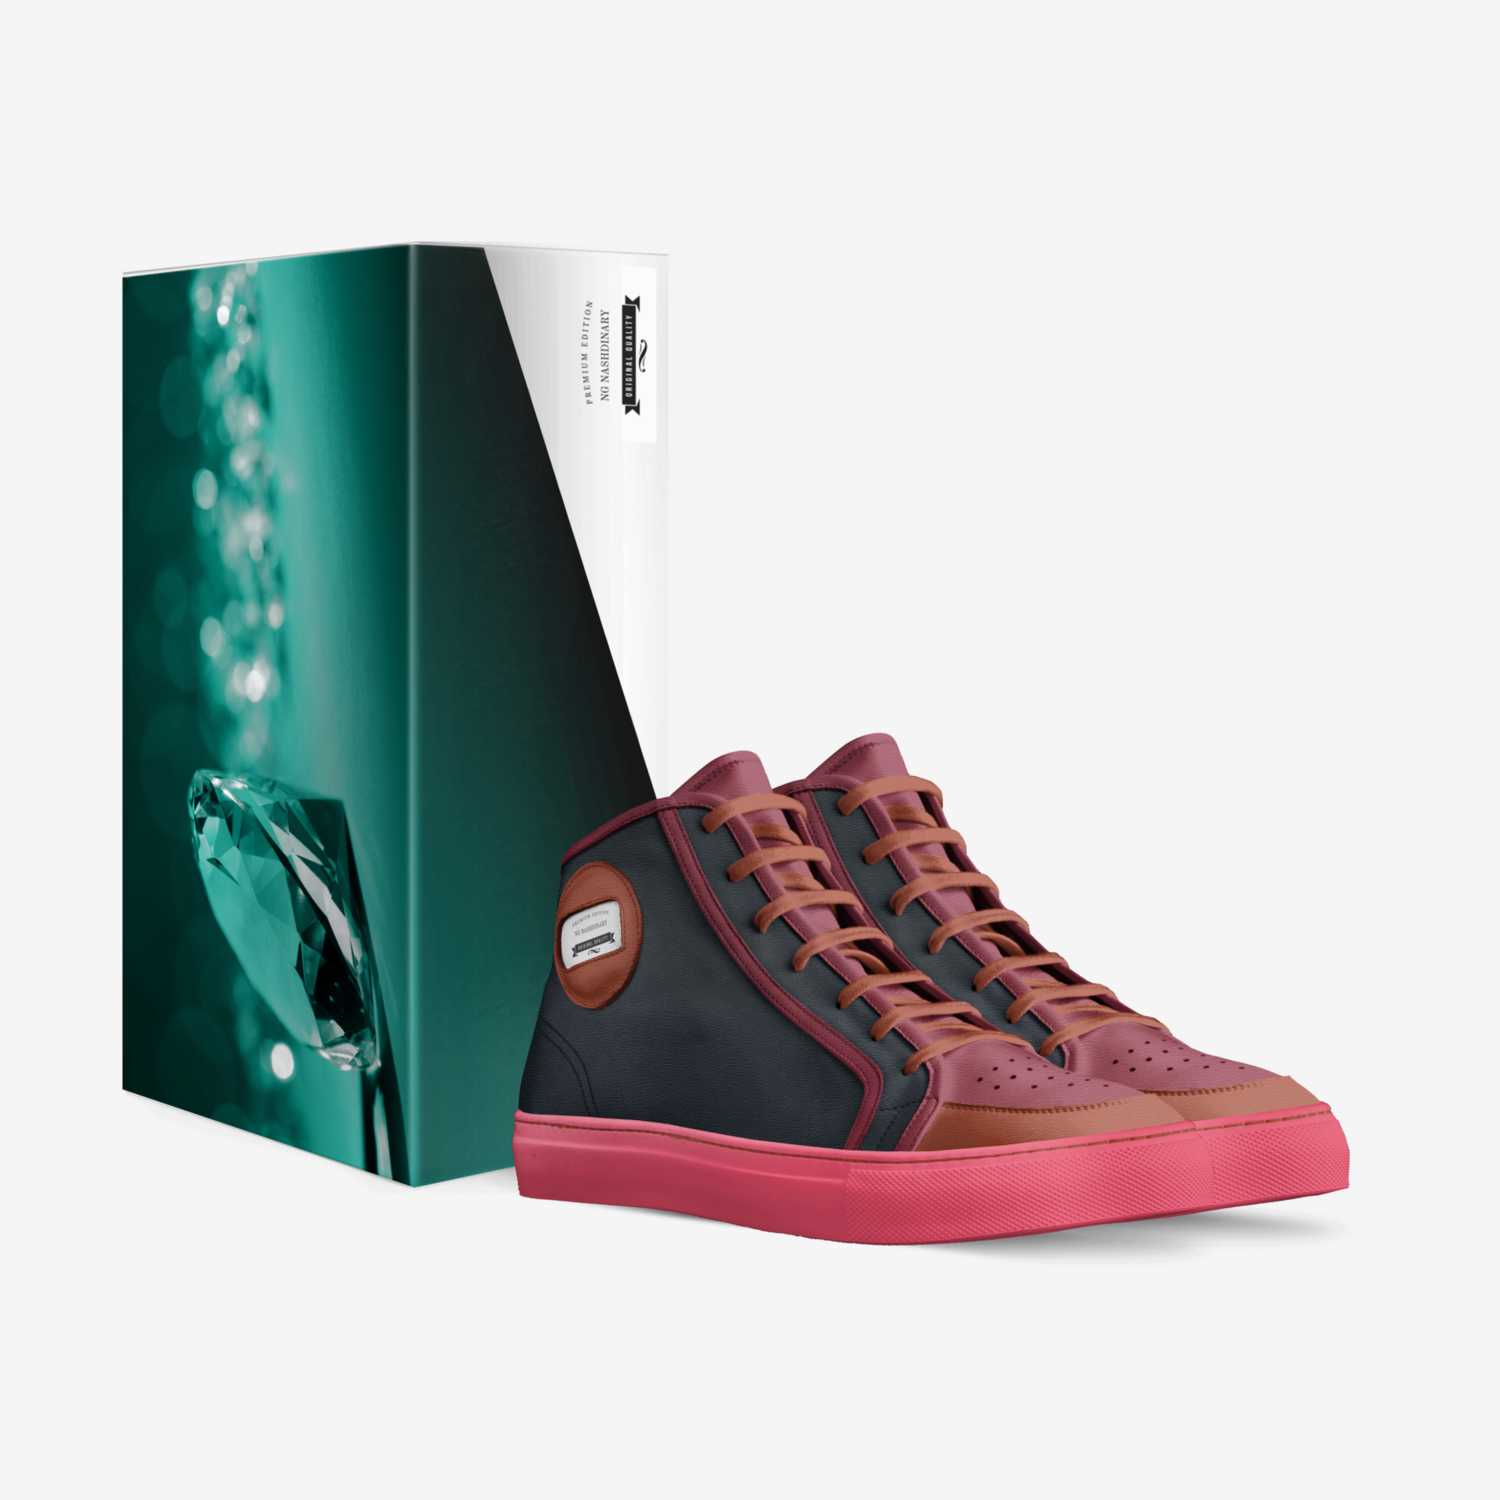 NG Nashdinary  custom made in Italy shoes by Ng Nashdinary | Box view